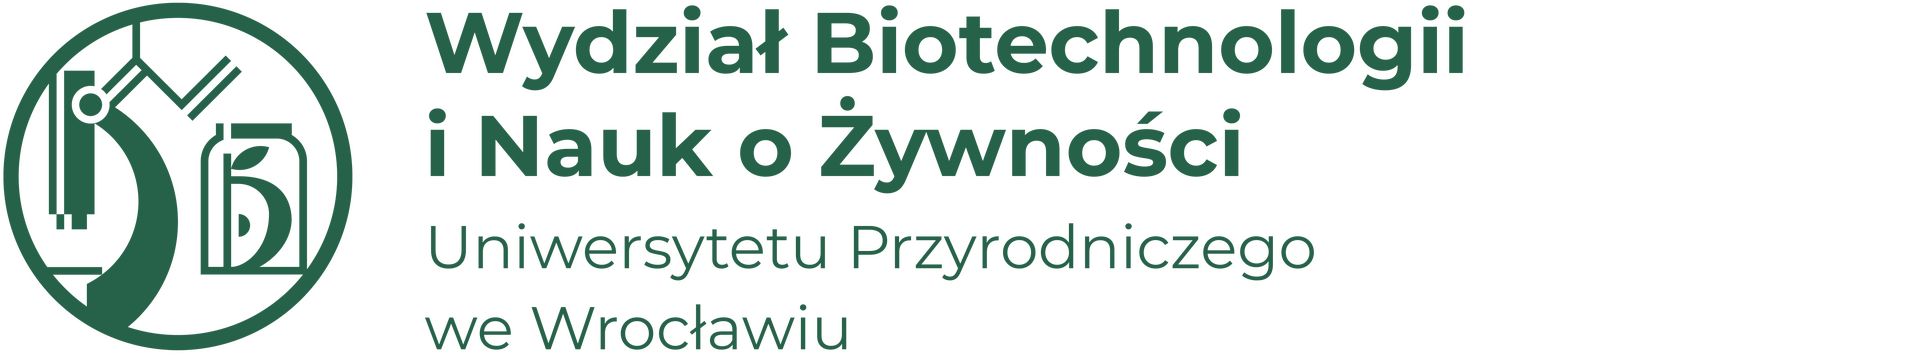 Wydział Biotechnologii i Nauk o Żywności